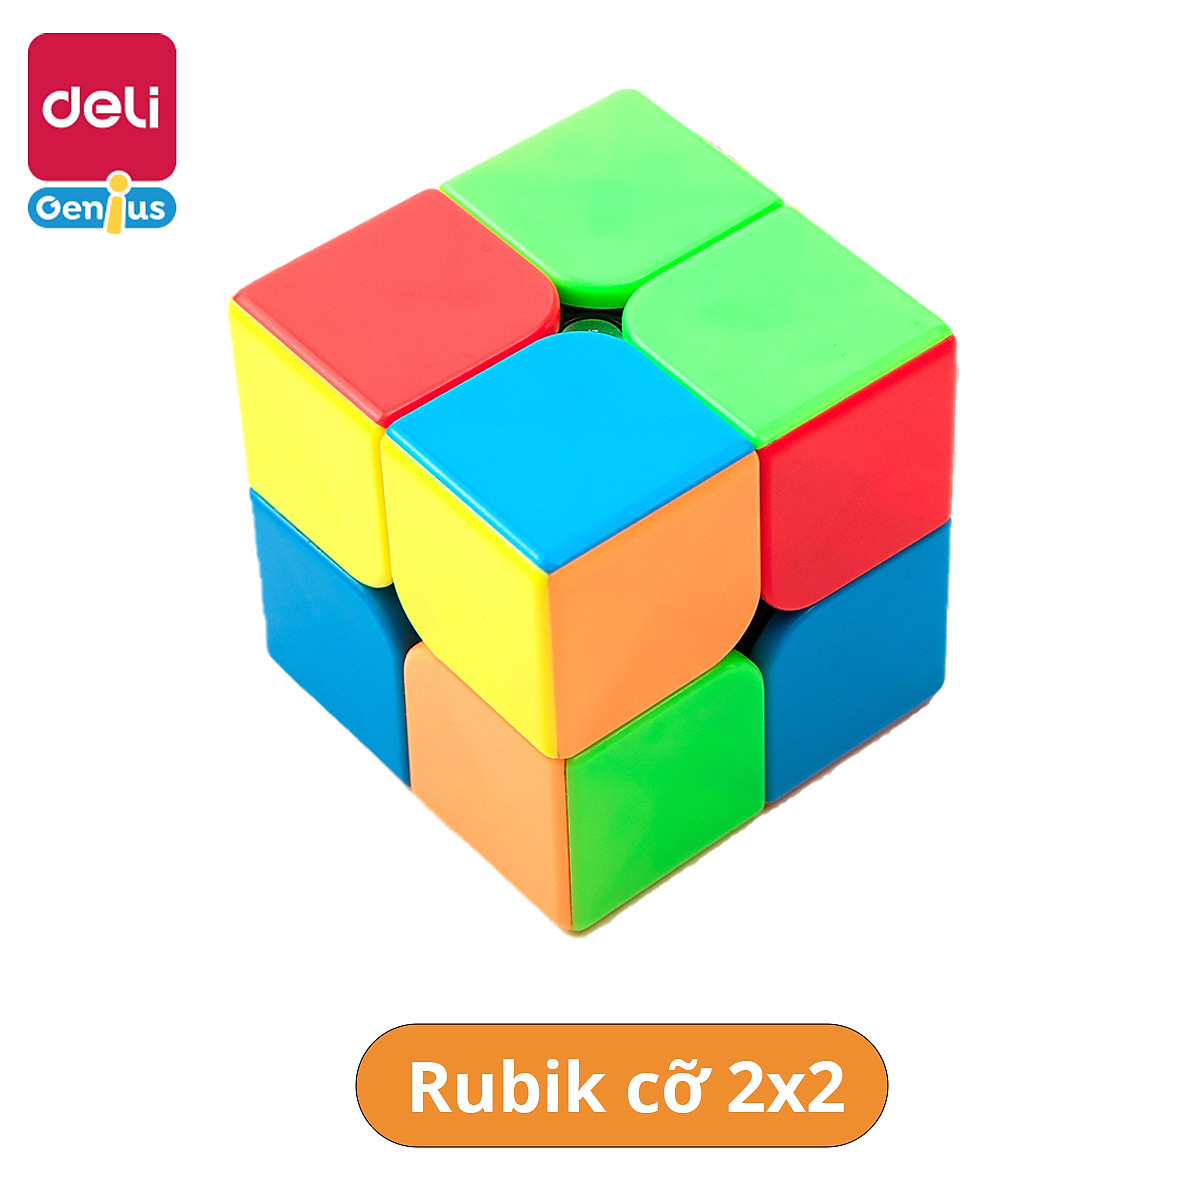 Hướng dẫn cách giải rubik 4x4 đơn giản cho người đã biết chơi 3x3  YouTube